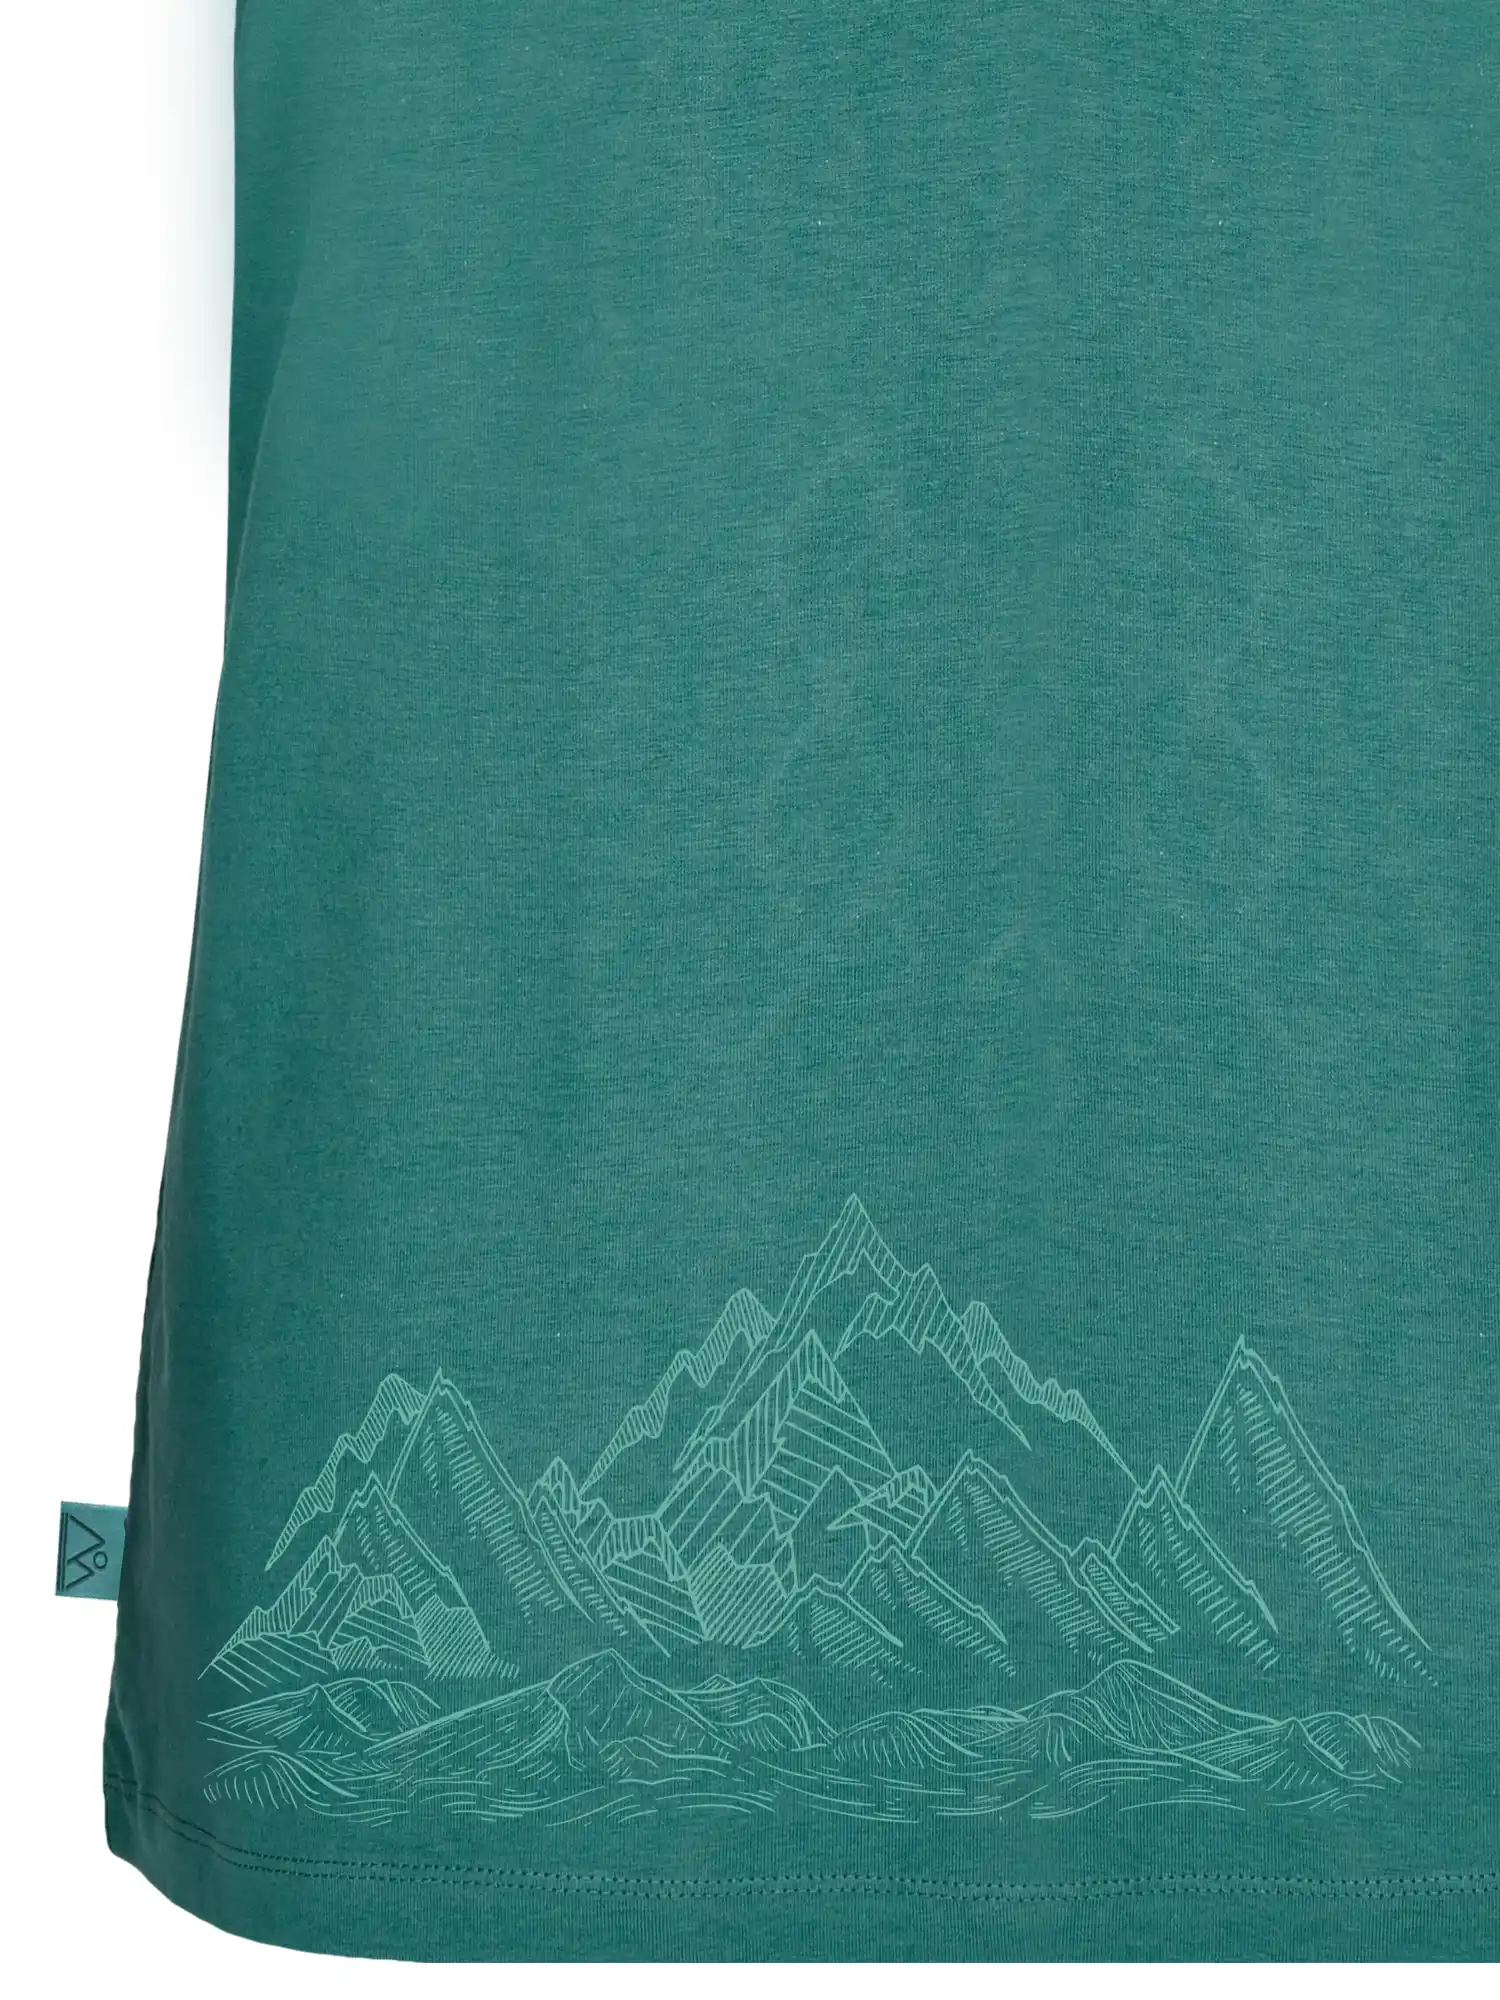 Ärmelloses Sportsshirt aus Baumwolle grün mit Bergaufdruck